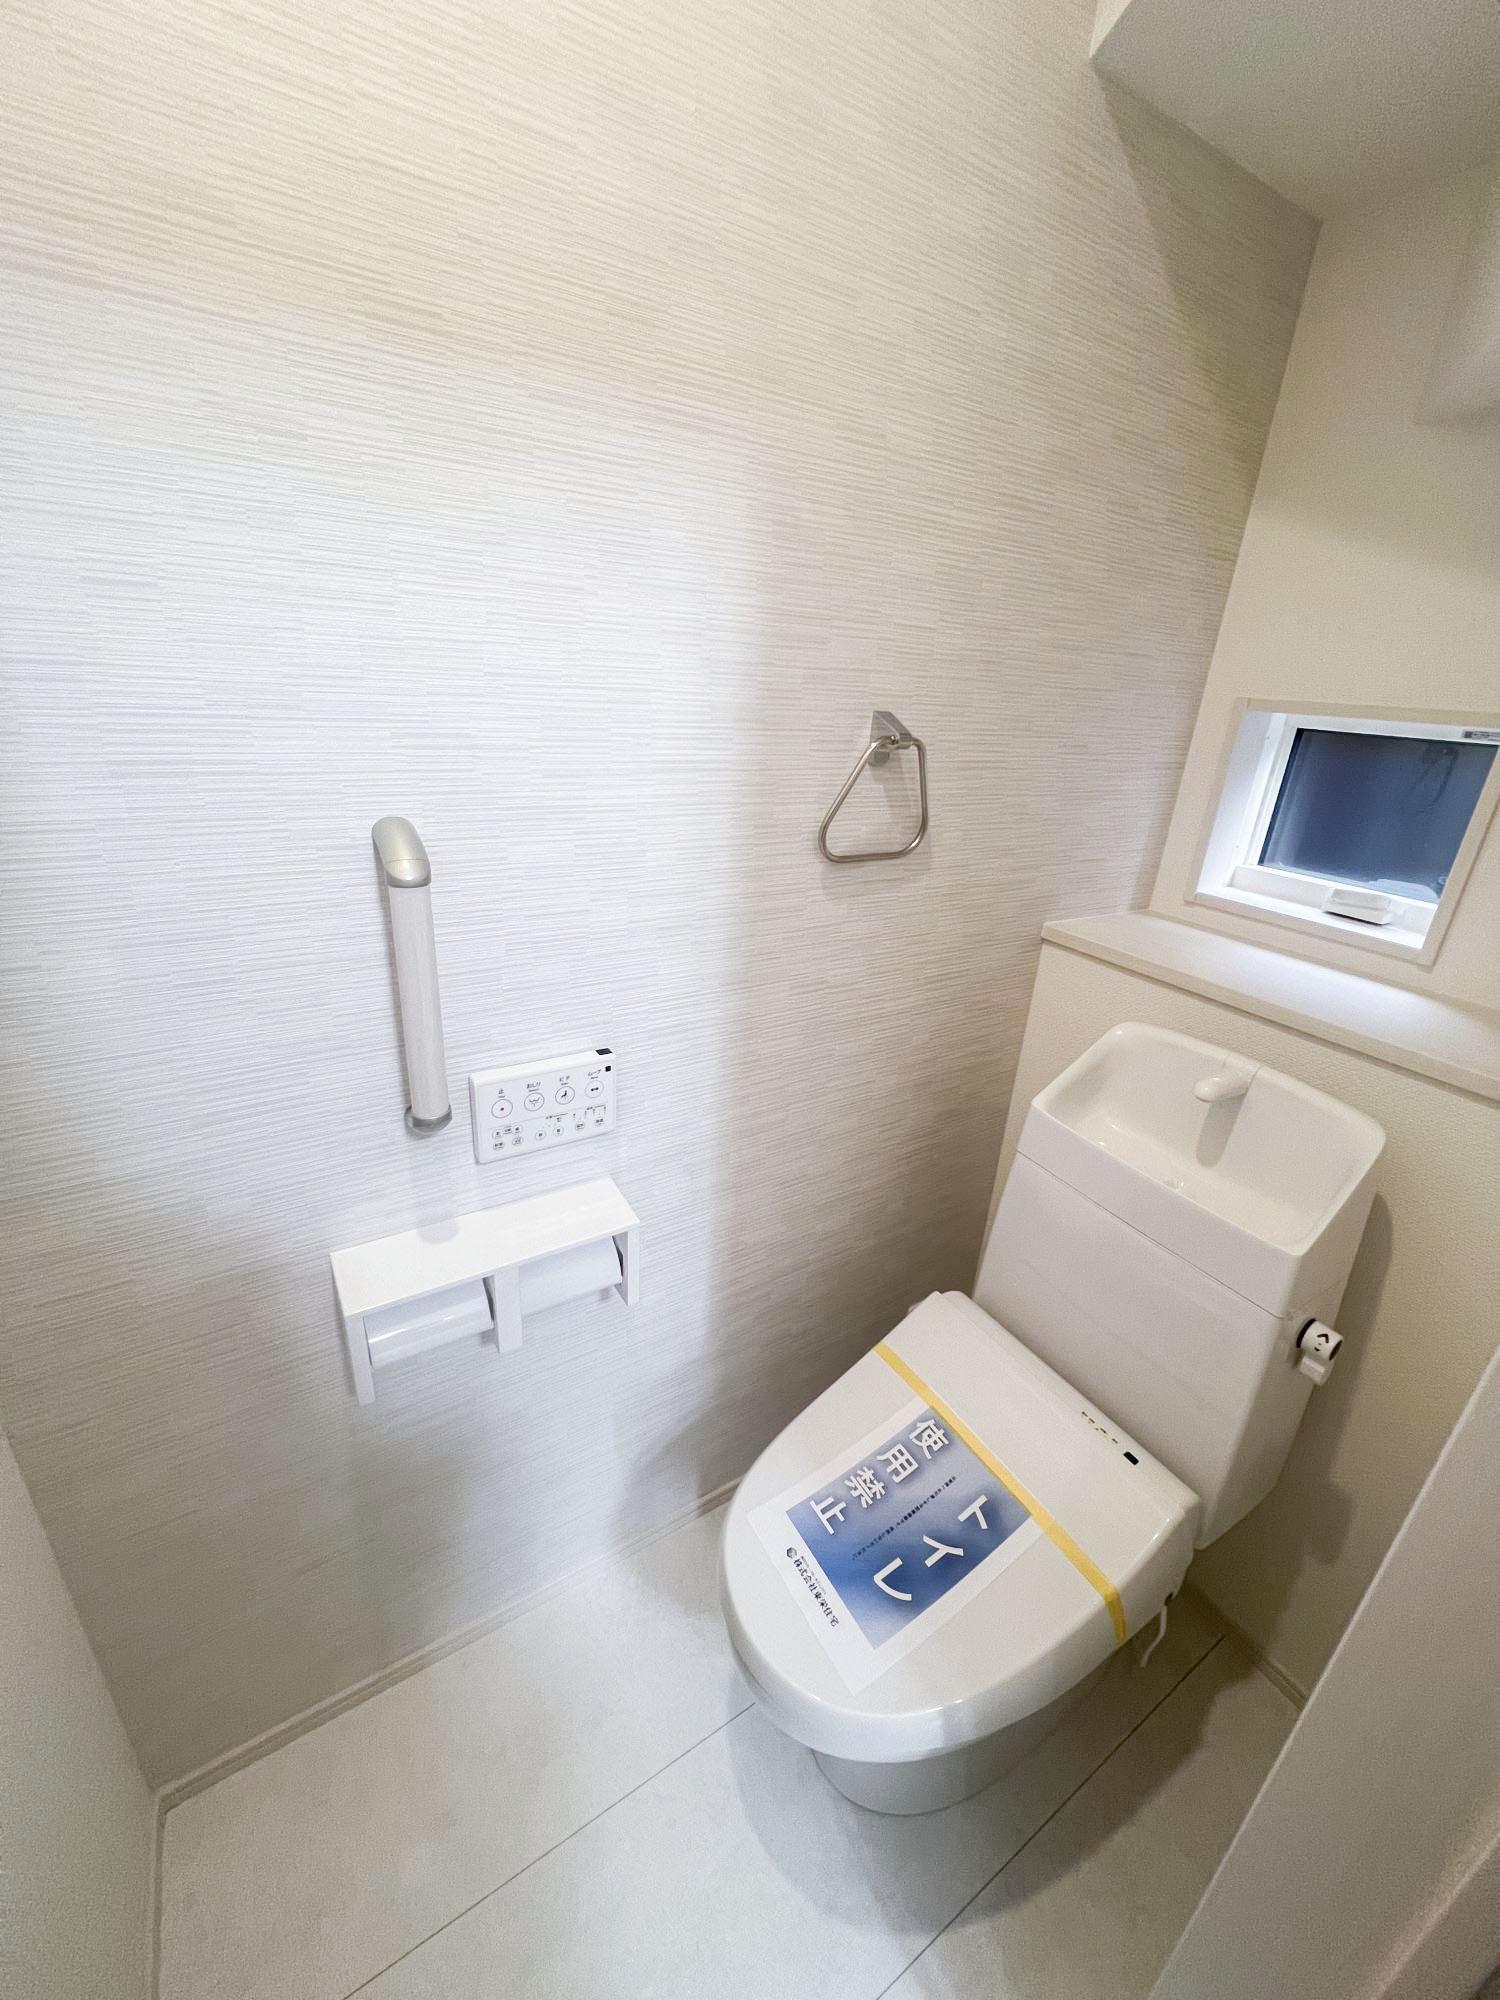 【2号棟1階トイレ】水はねしにくい手洗い器、手すり、カウンタなど設備も充実しています。